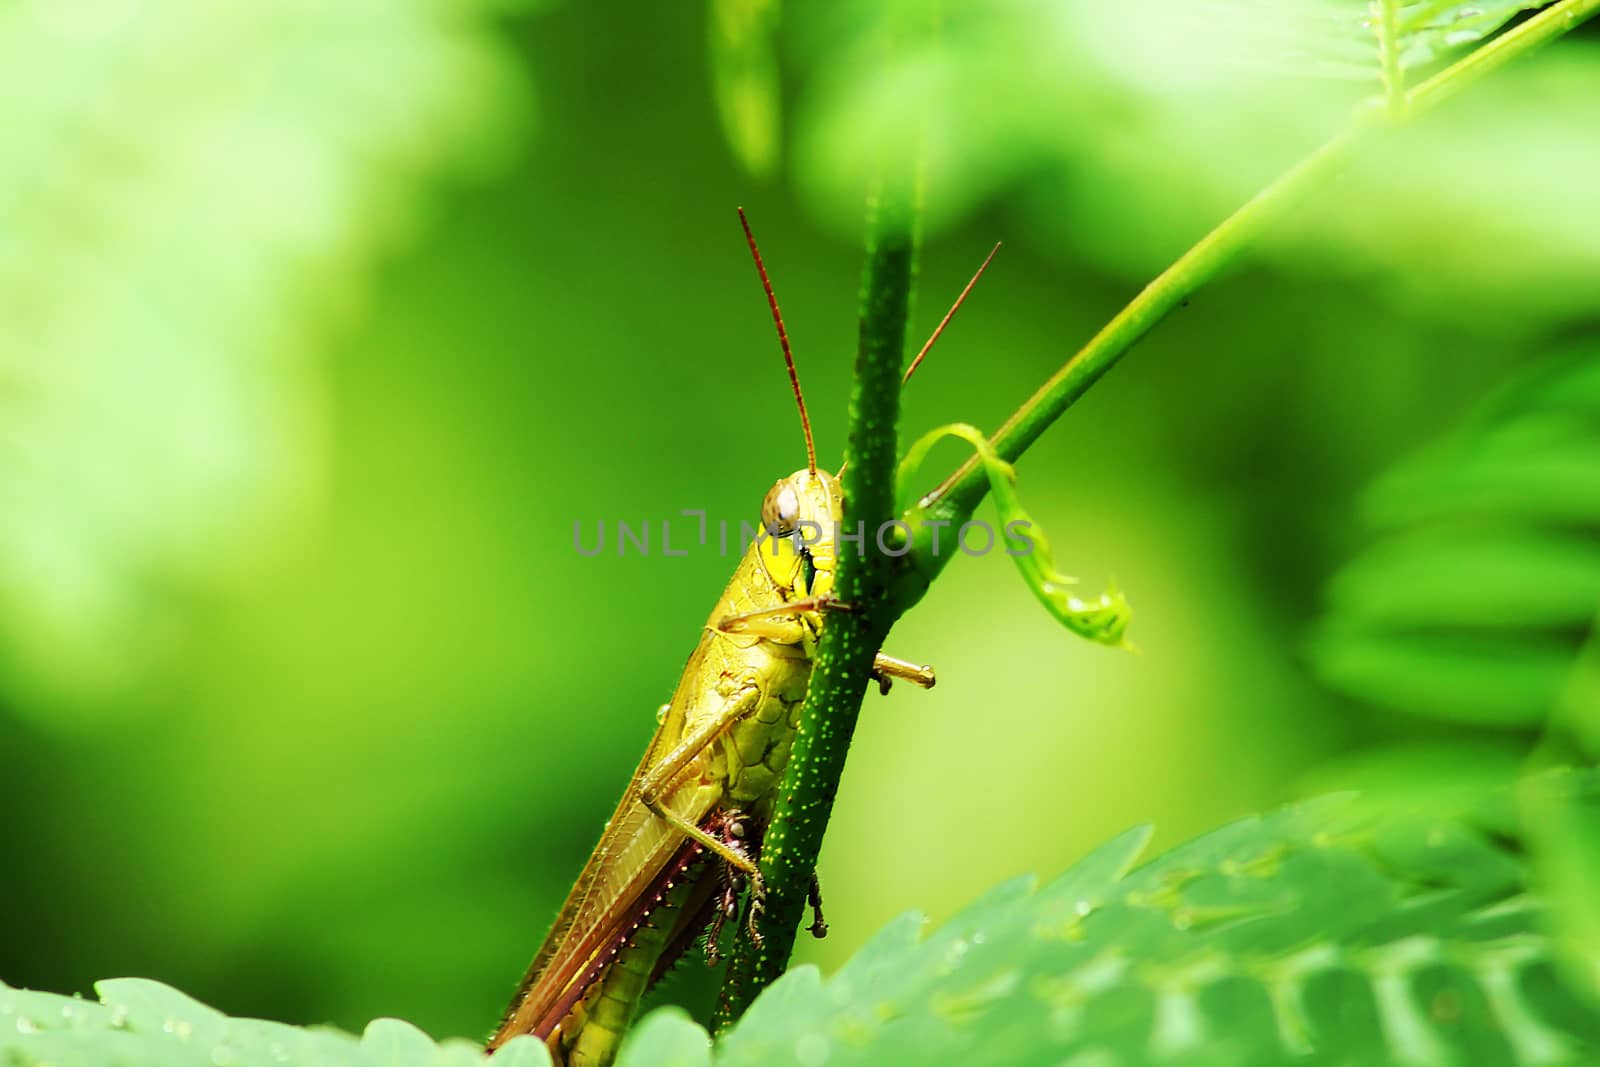 Yellow grasshopper on leaf by Puripatt